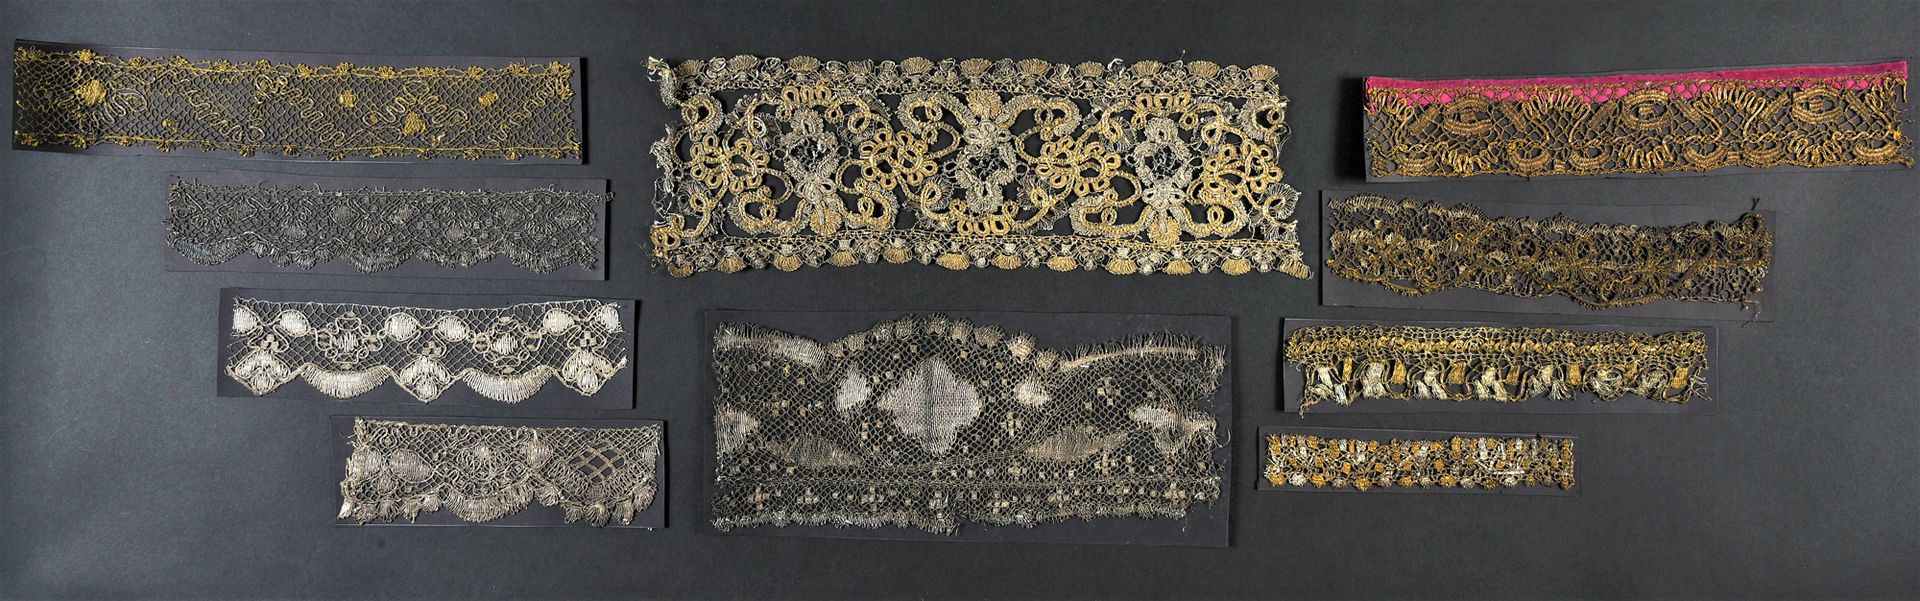 Null 17和18世纪下半叶的金属梭织花边的文件。

一件罕见的金银丝线花边和金色平线的文件，尺寸：40厘米x 13.5厘米（一般状况良好，有氧化现象）

参&hellip;